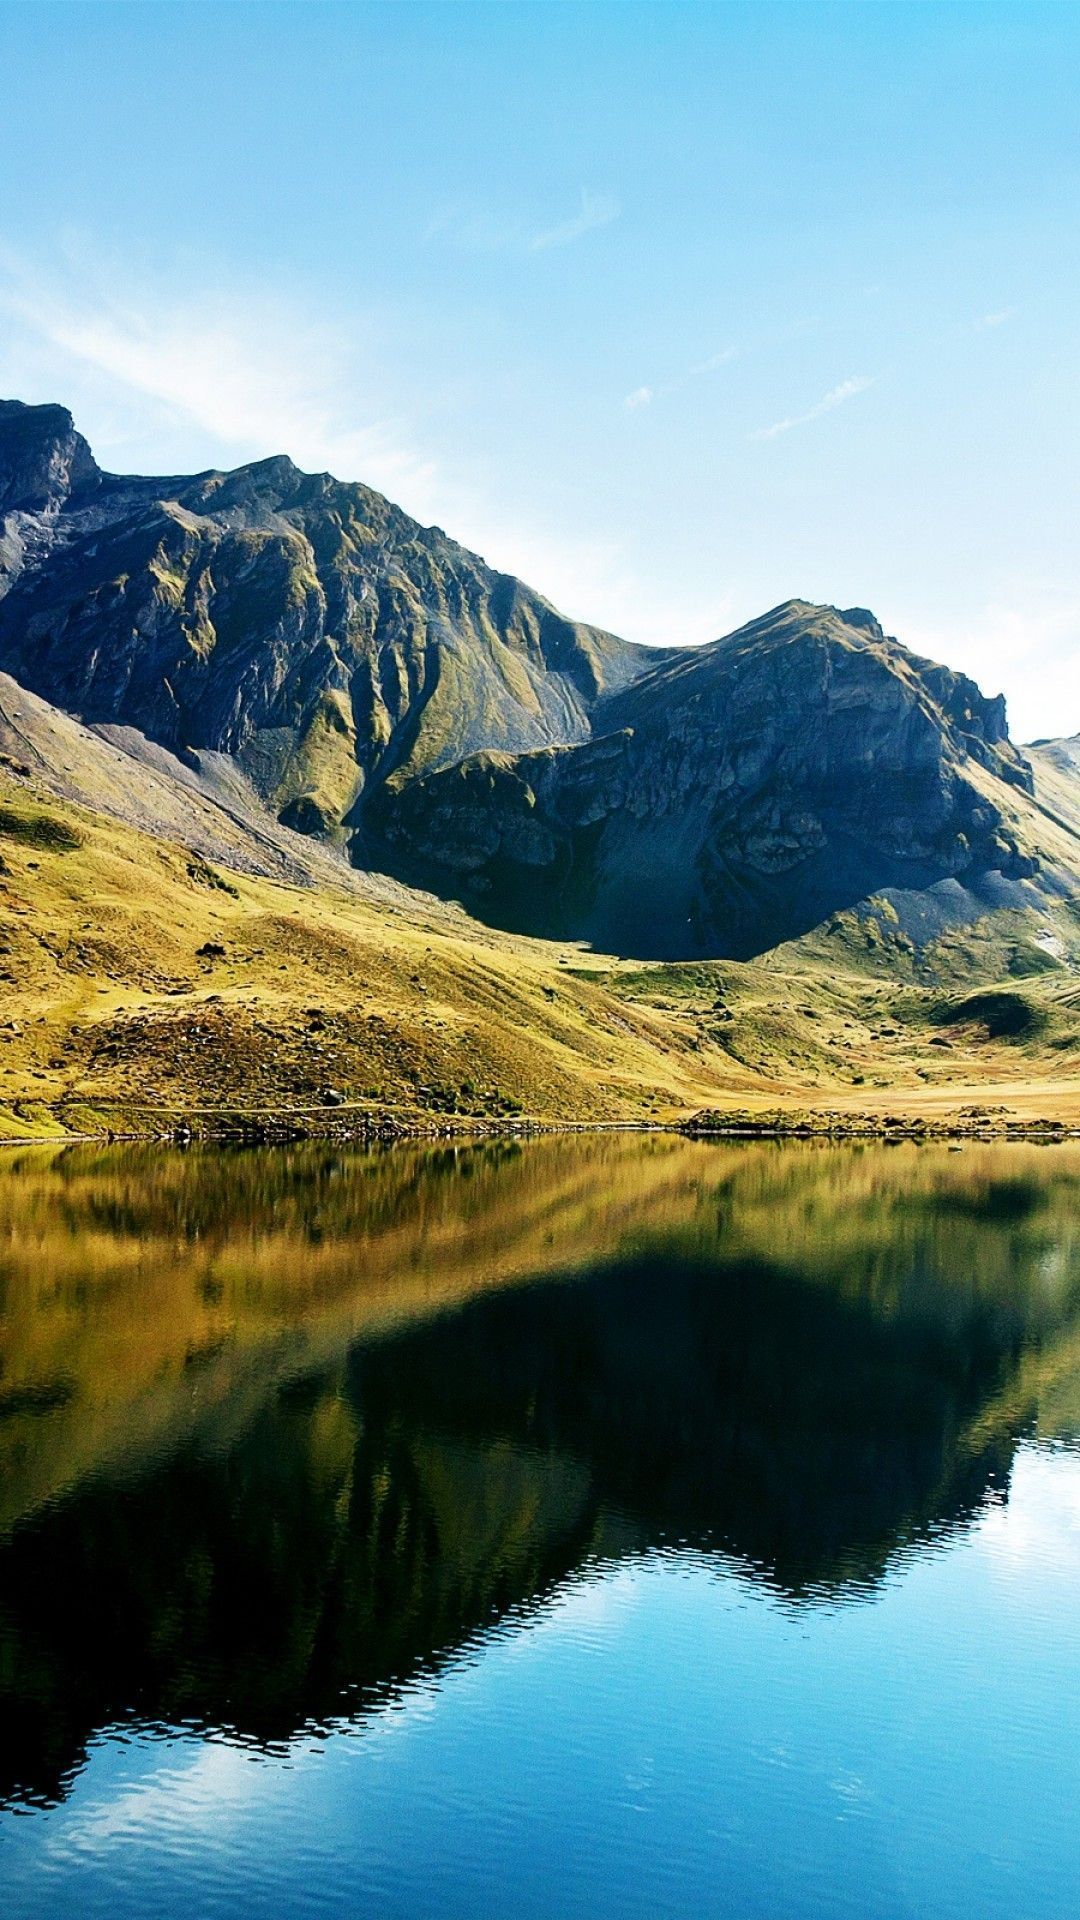  تصویر زمینه تحسین برانگیز گوشی از منظره زیبای سوئیس